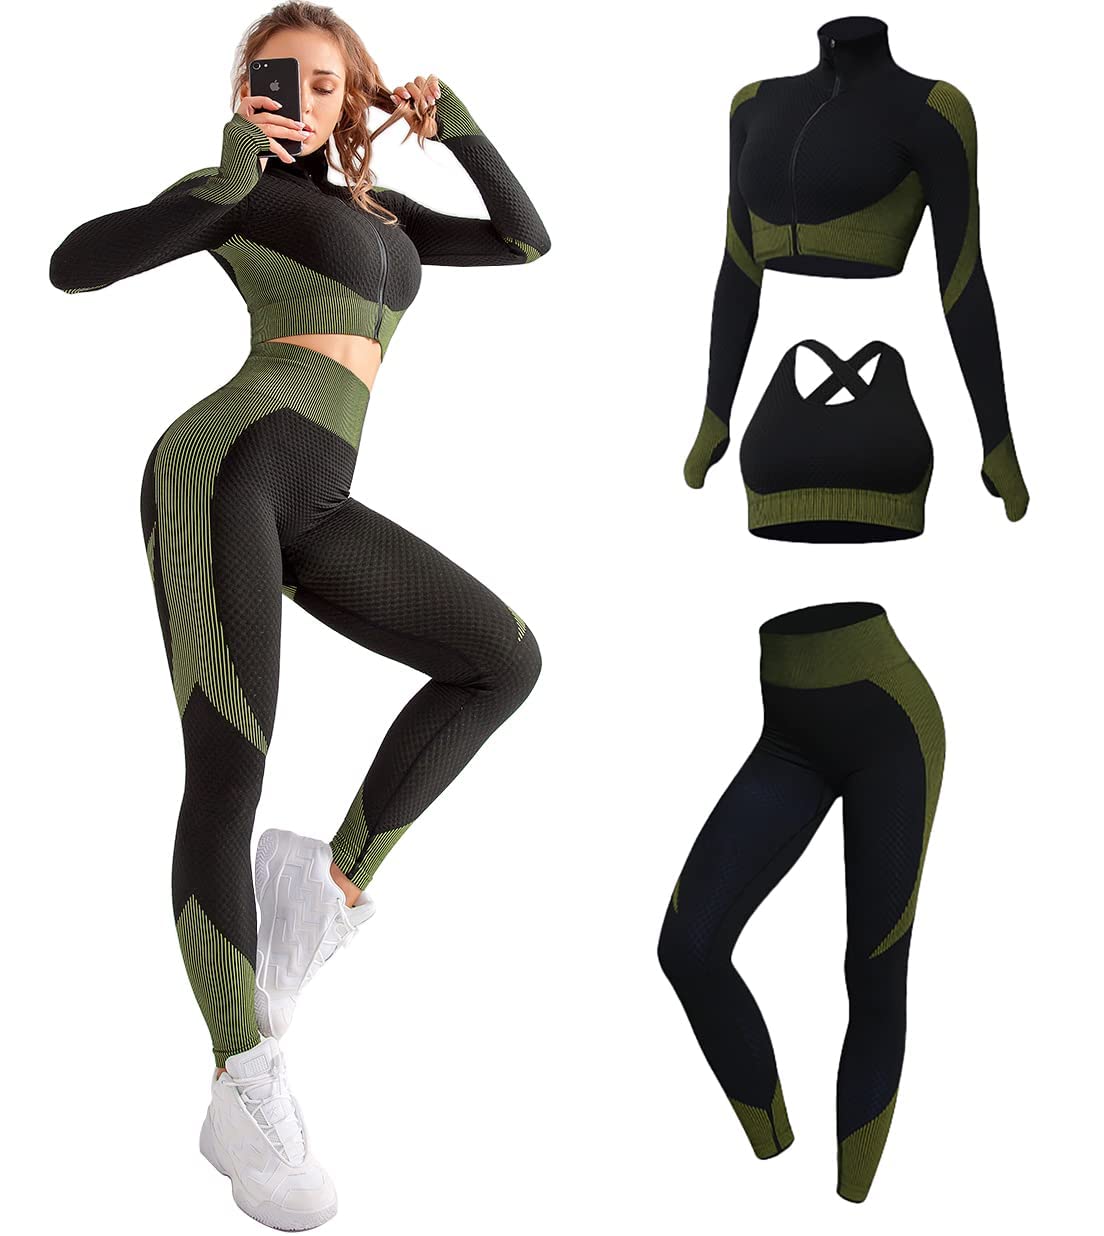 Women's 3pcs Seamless Workout Outfits Sets - BEYOND FASHION